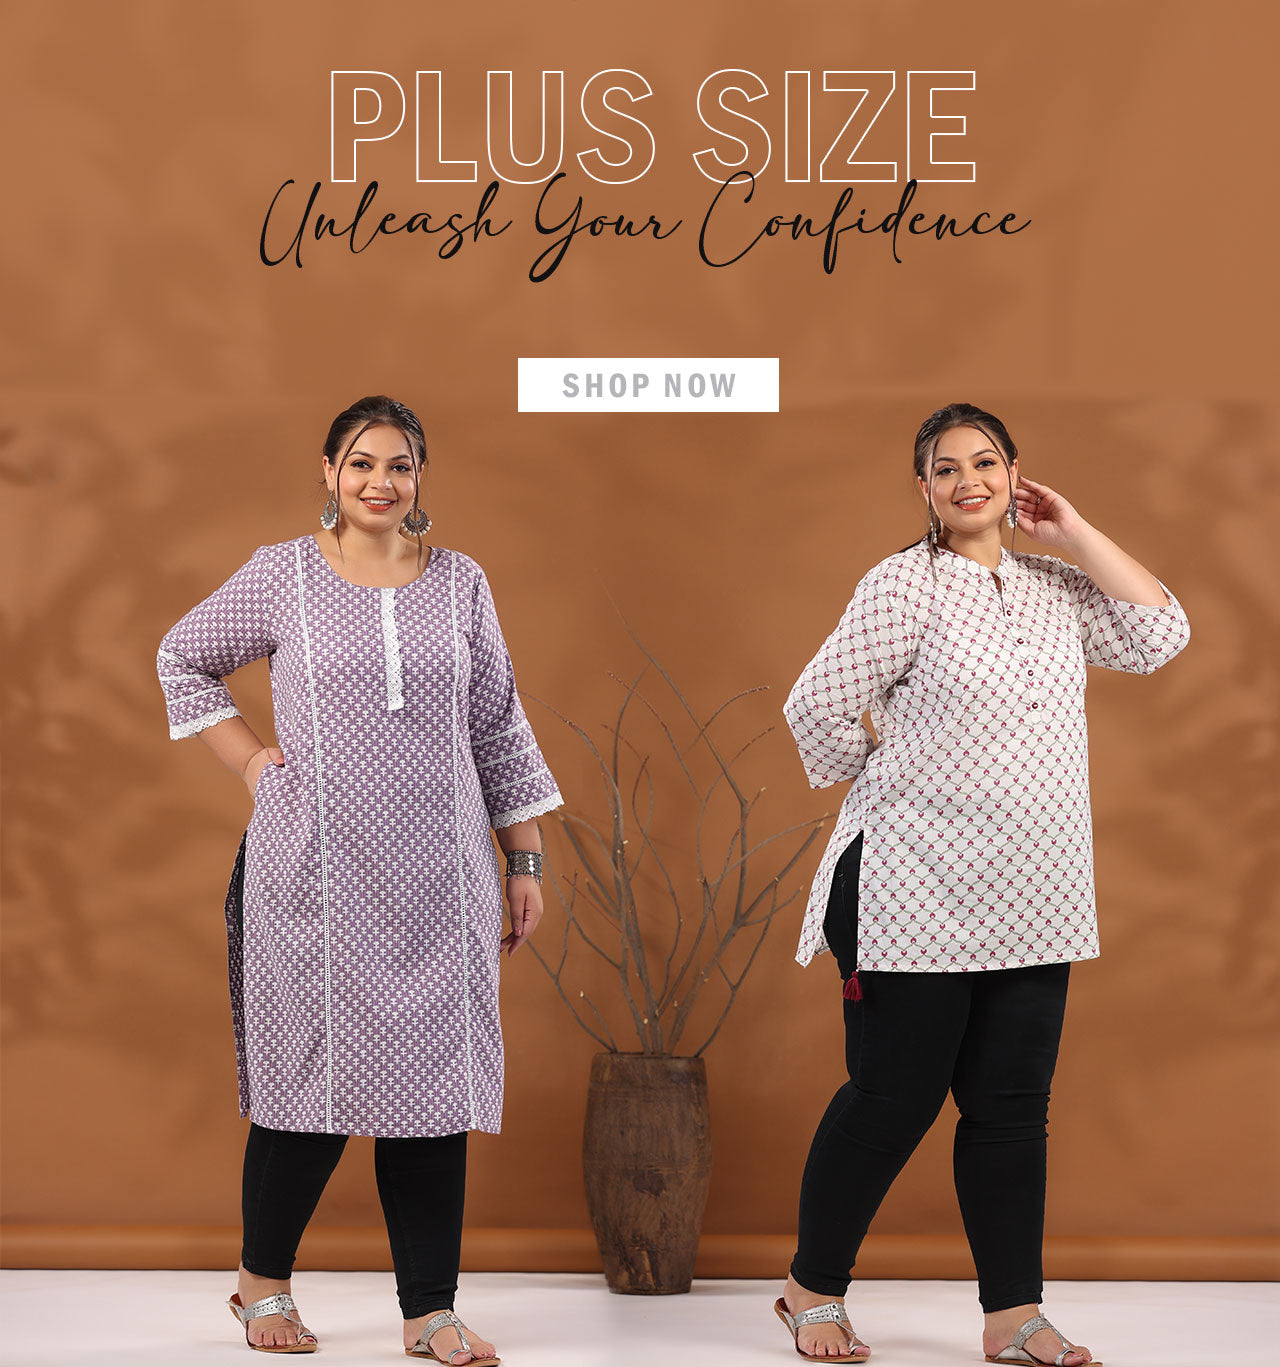 Buy Indian Wear | Suit Sets & Kurta for Women | Jaipur Kurti